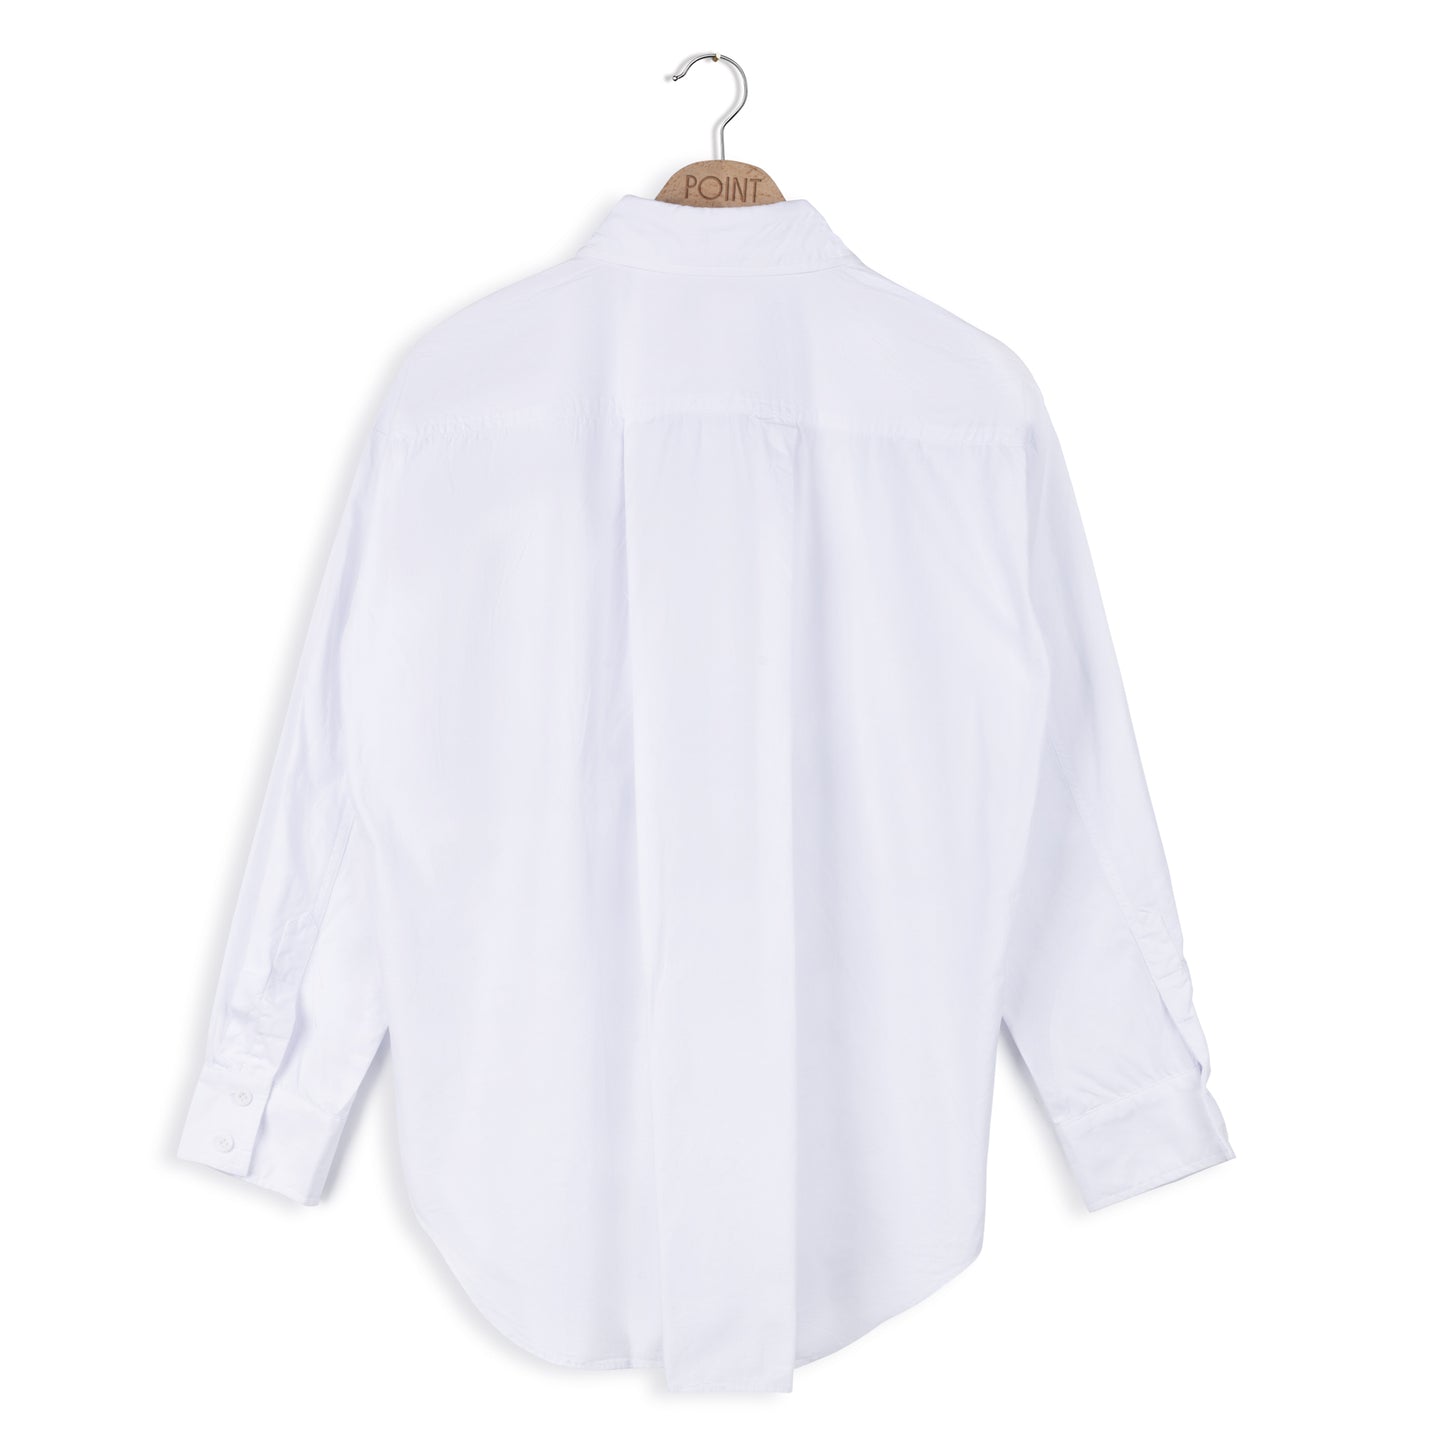 point linen blouse